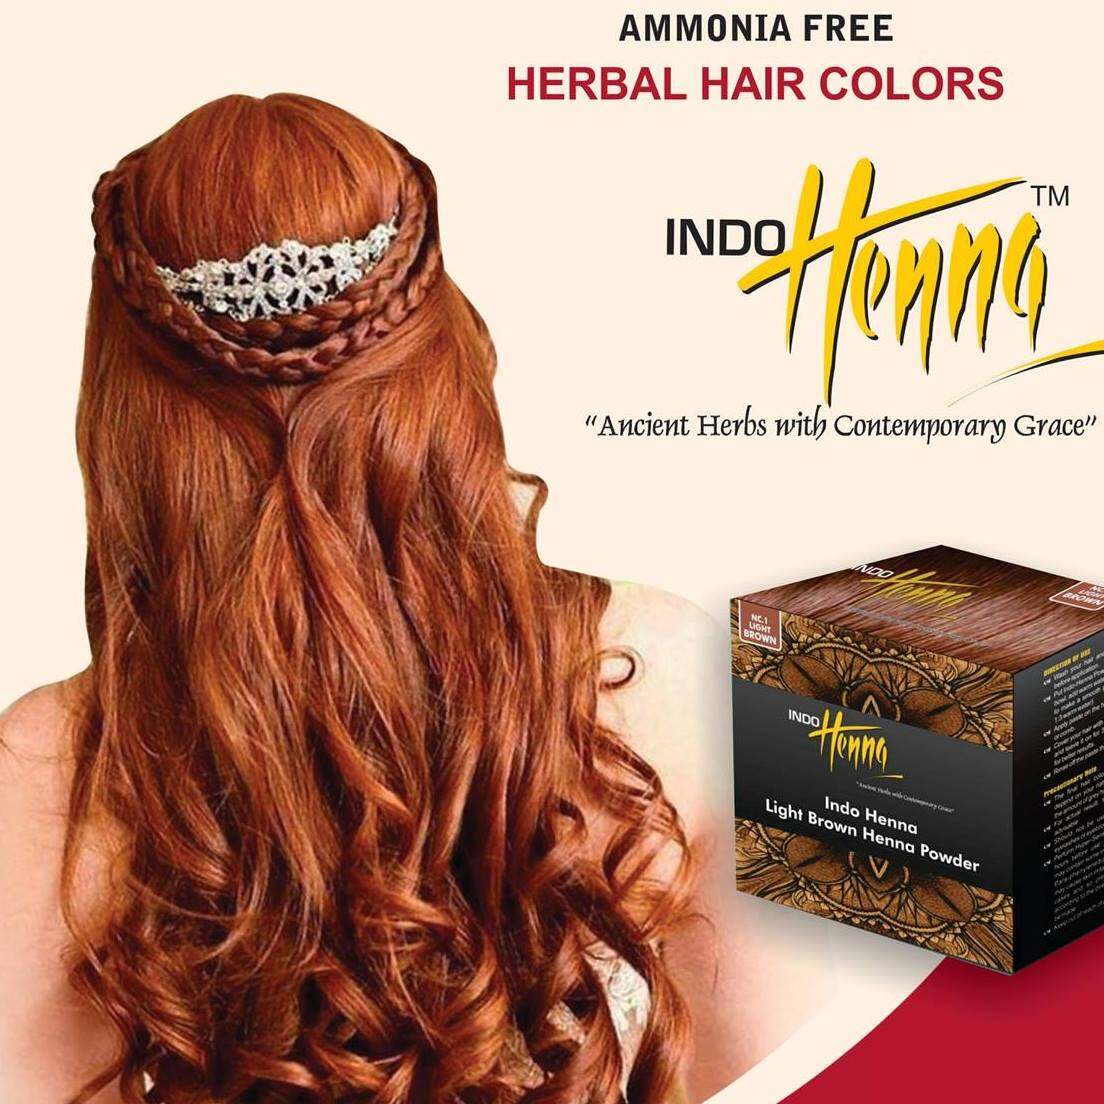 เทคโนโลยีใหม่ Indo henna อินโด เฮนน่า สีผมจากสมุนไพรเป็นหนึ่งในสีผมที่ดีในตลาดเน้นหลักของเราคือให้คุณภาพแก่ผู้ใช้ของเรา